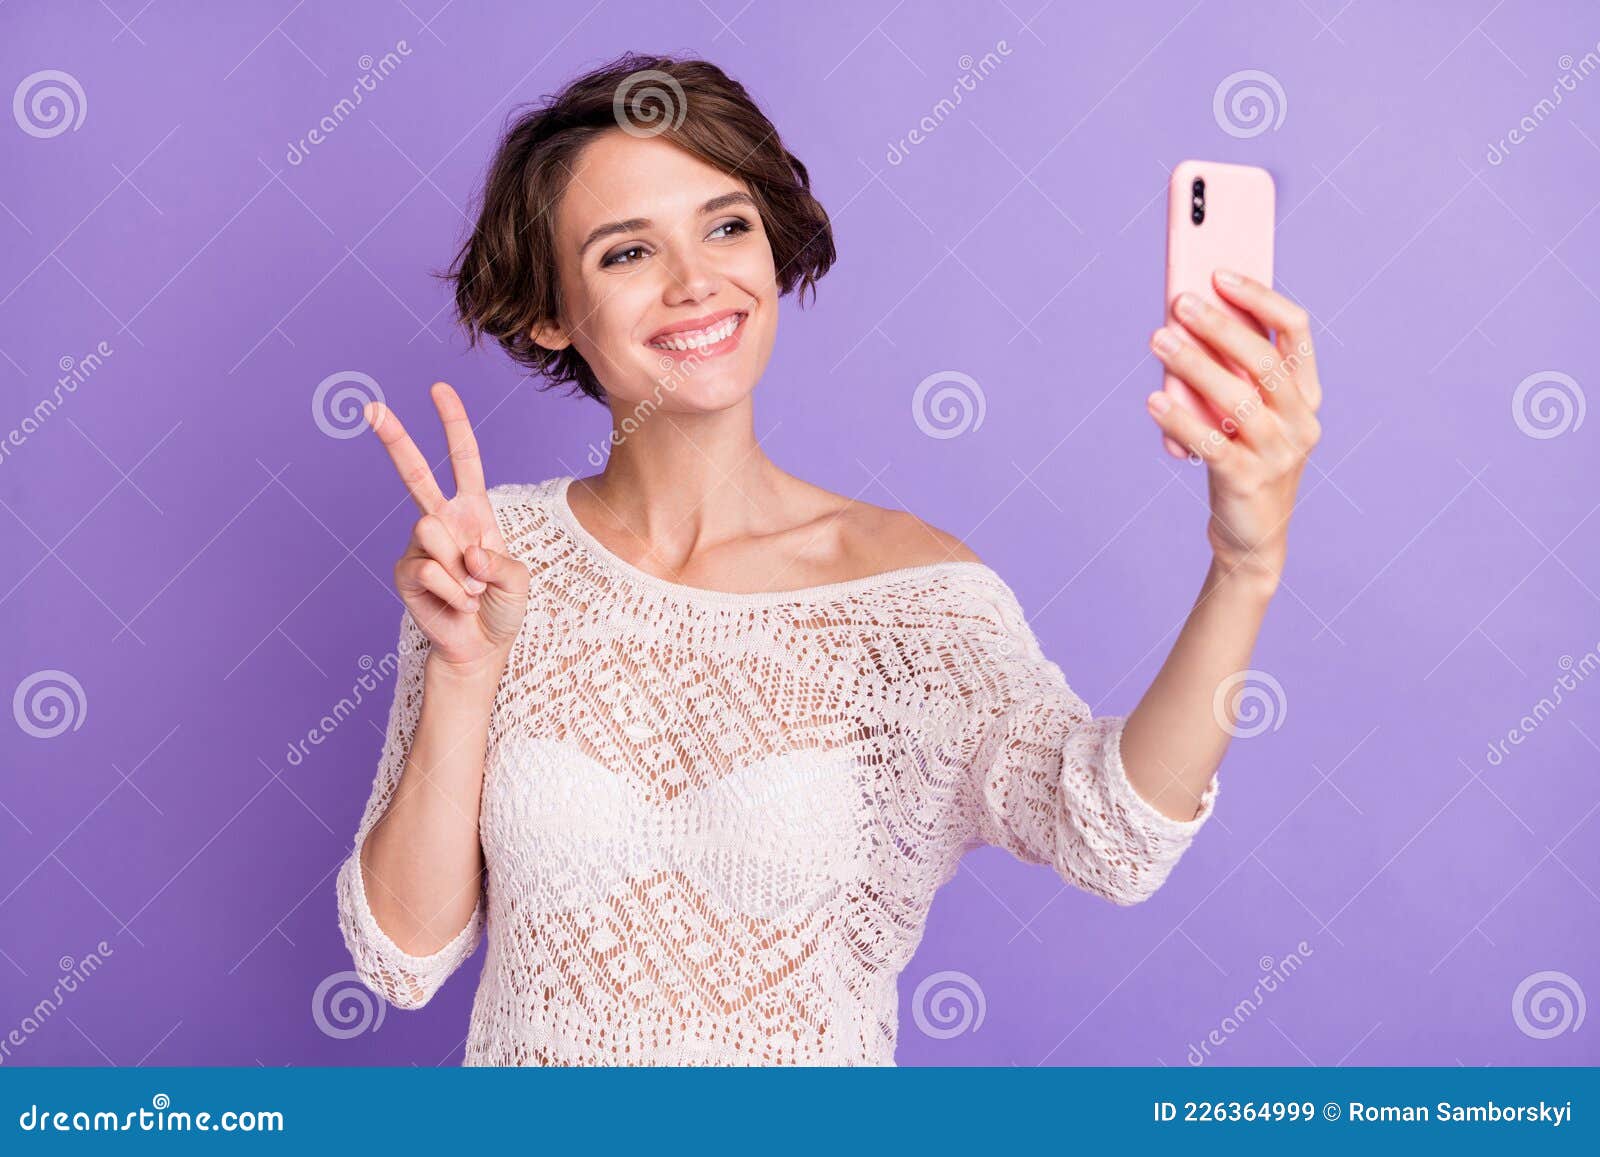 petite girl fingering selfie